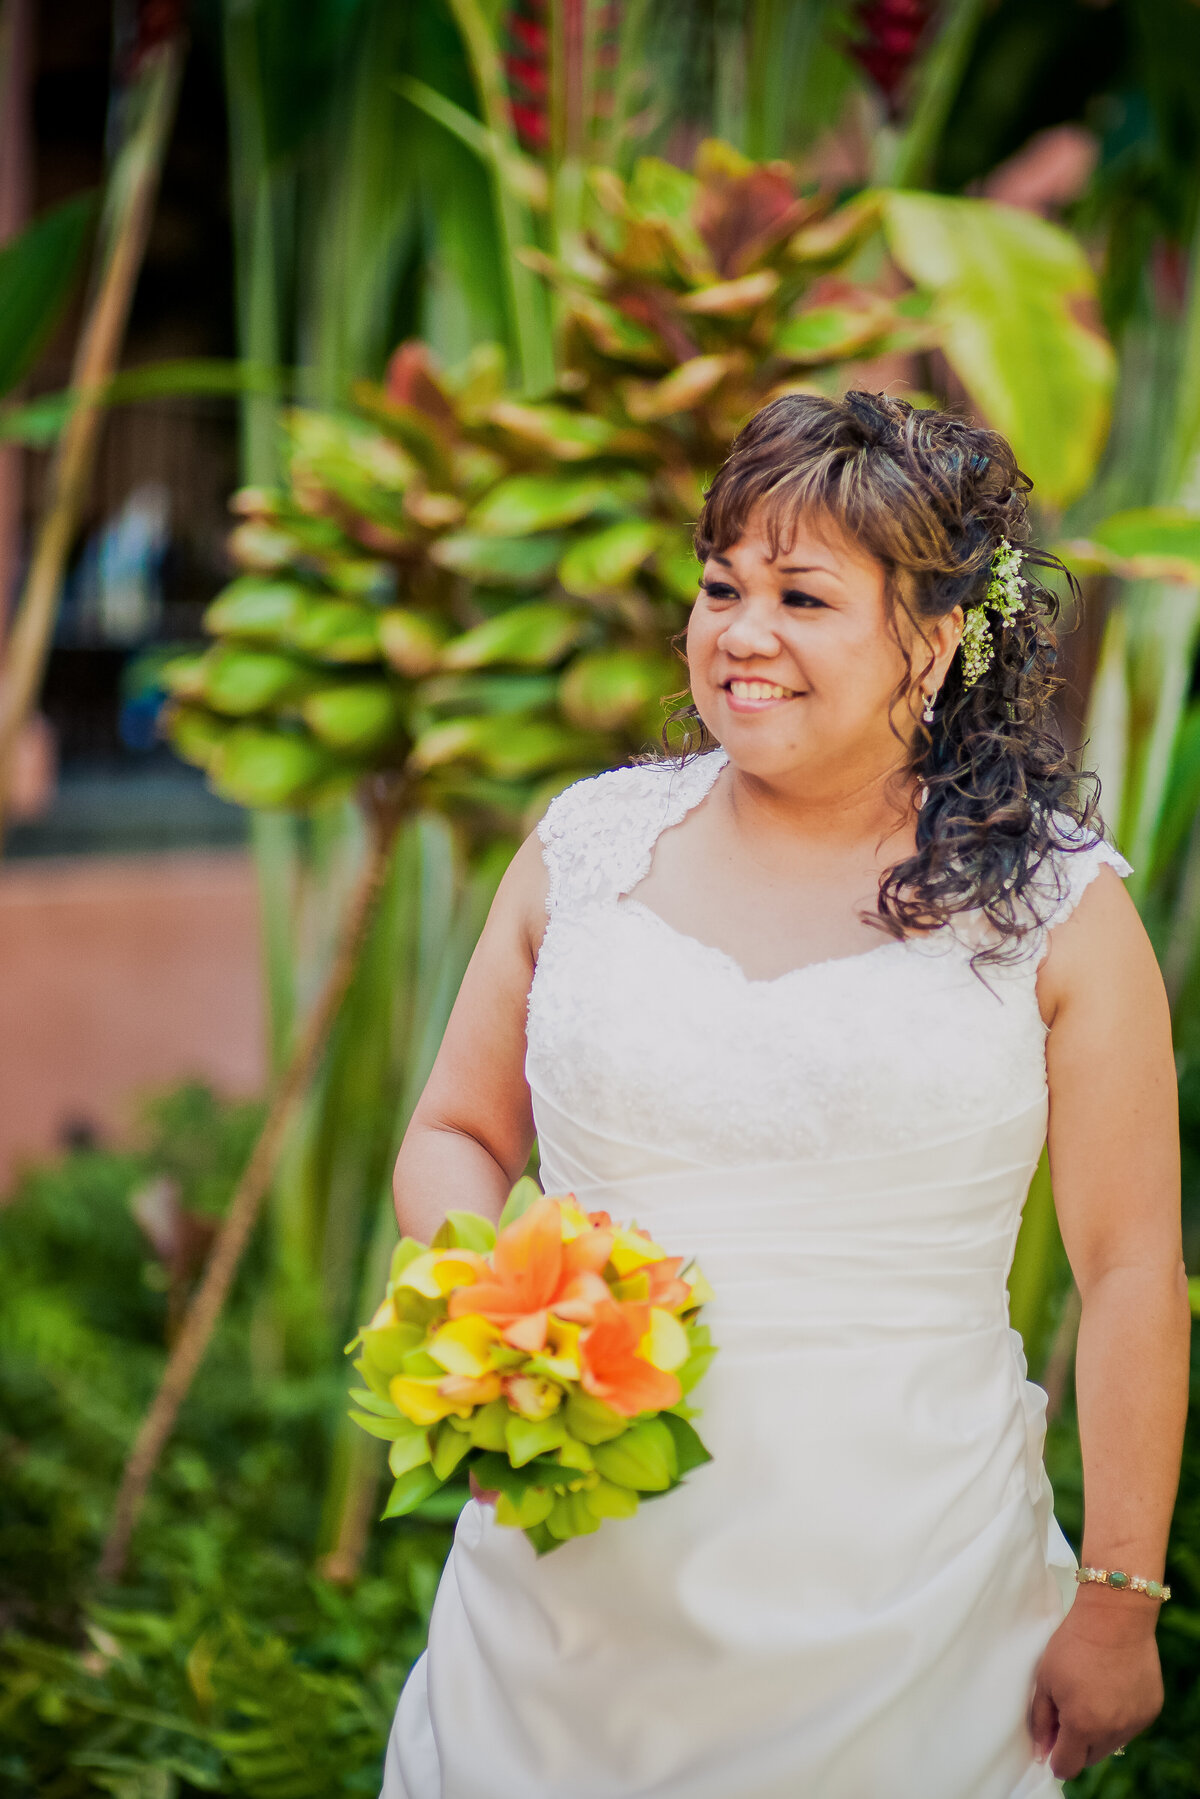 Candid Photo of a Bride at the Royal Hawaiian Hotel